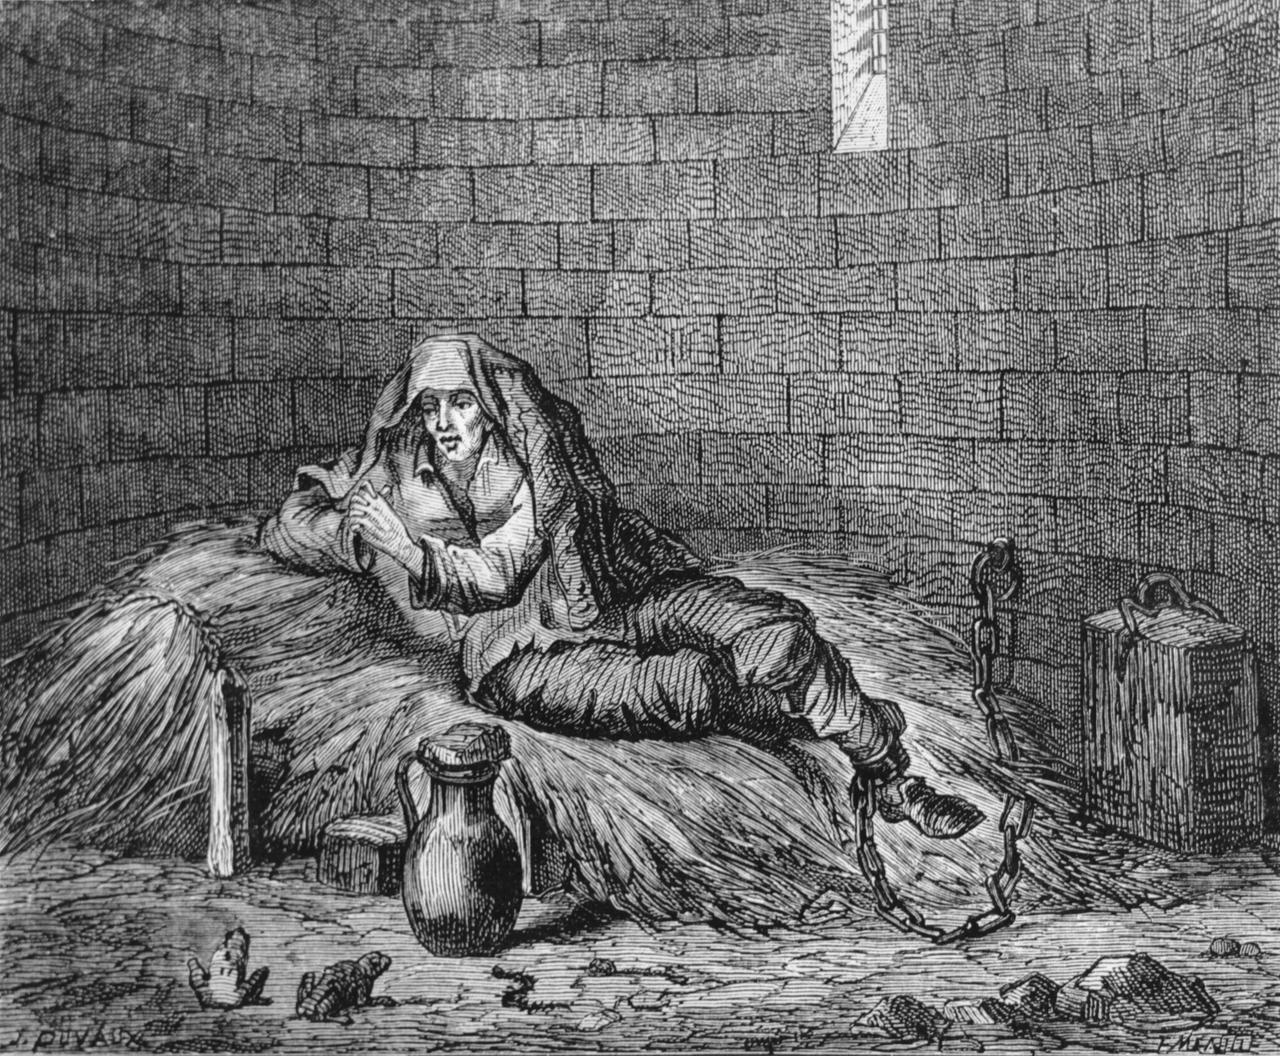 Der Holzstich zeigt den Verbrecher Cartouche in einer Zelle auf einem Heuhaufen sitzend, sein Fuß ist mit einer Eisenkette an der Wand befestigt.